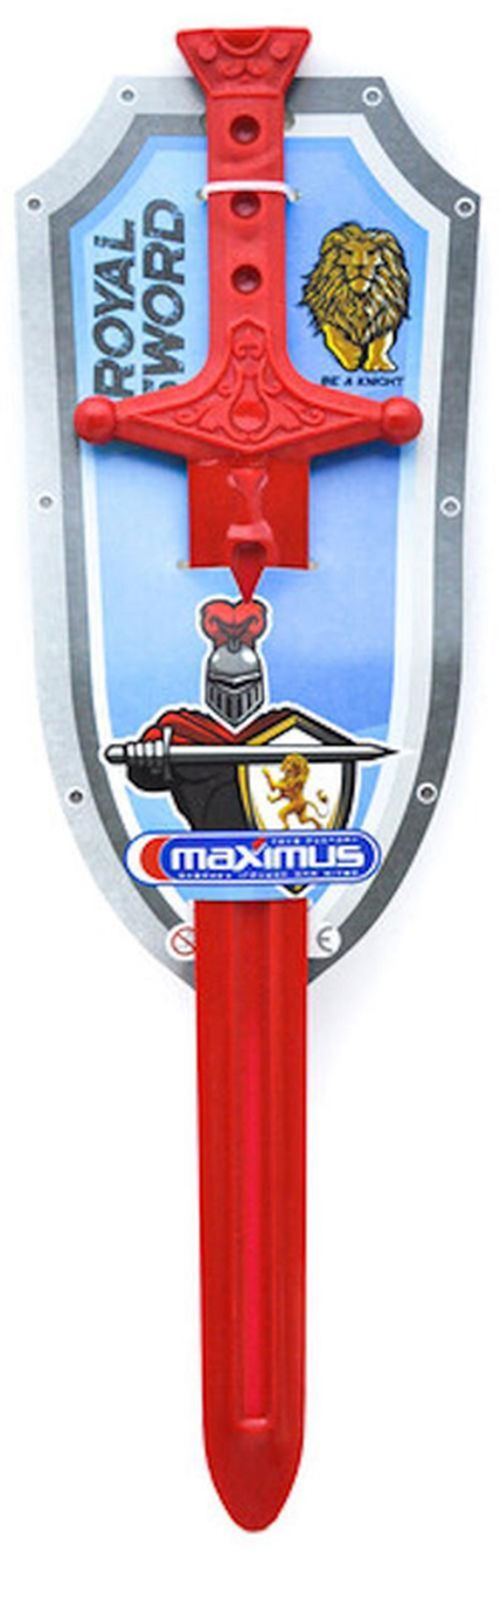 купить Игрушка Maximus MX9036 Sabia regelui в Кишинёве 